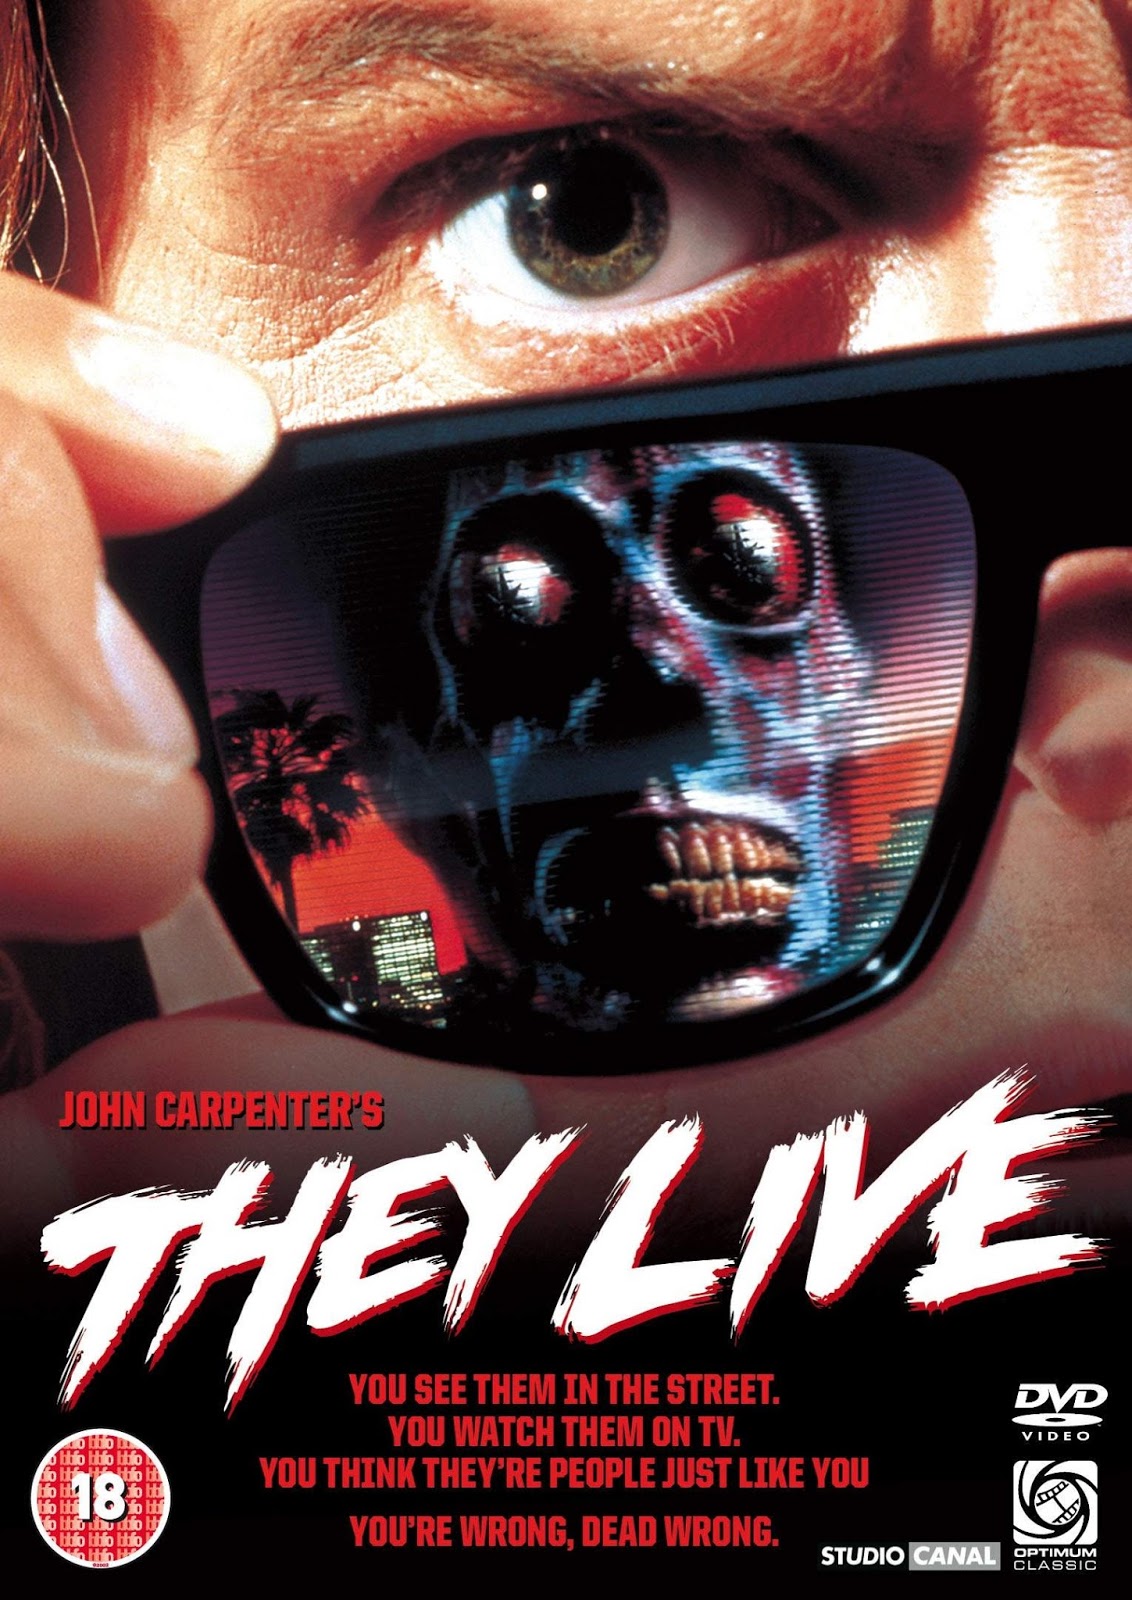 Projecció de la pel·lícula Están vivos (They Live, 1988), de John Carpenter #Avivament2018